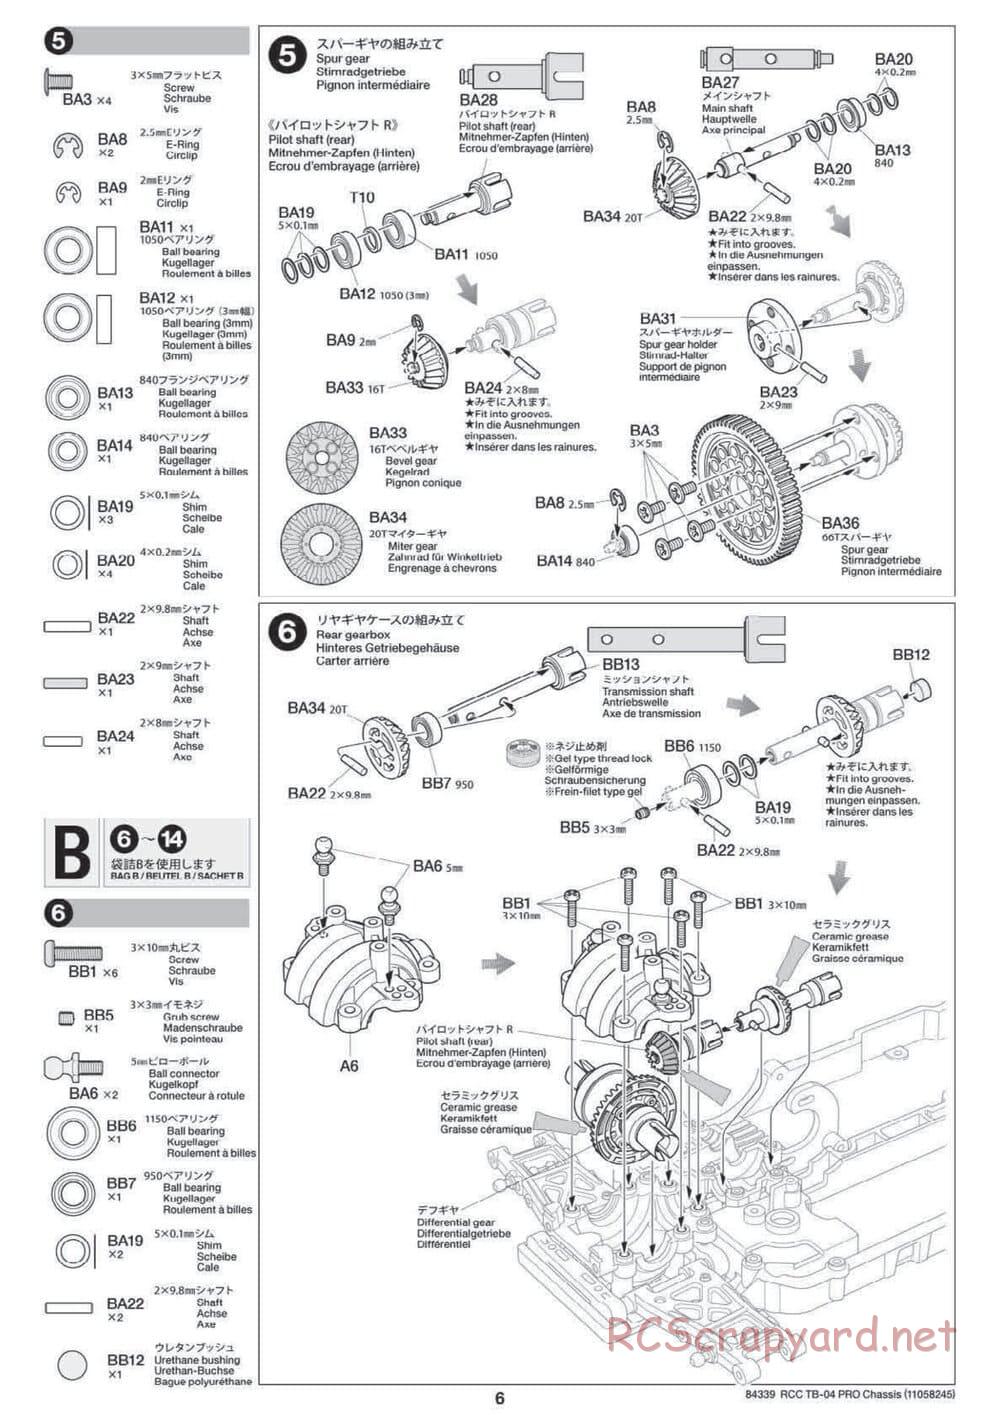 Tamiya - TB-04 Pro Chassis - Manual - Page 6